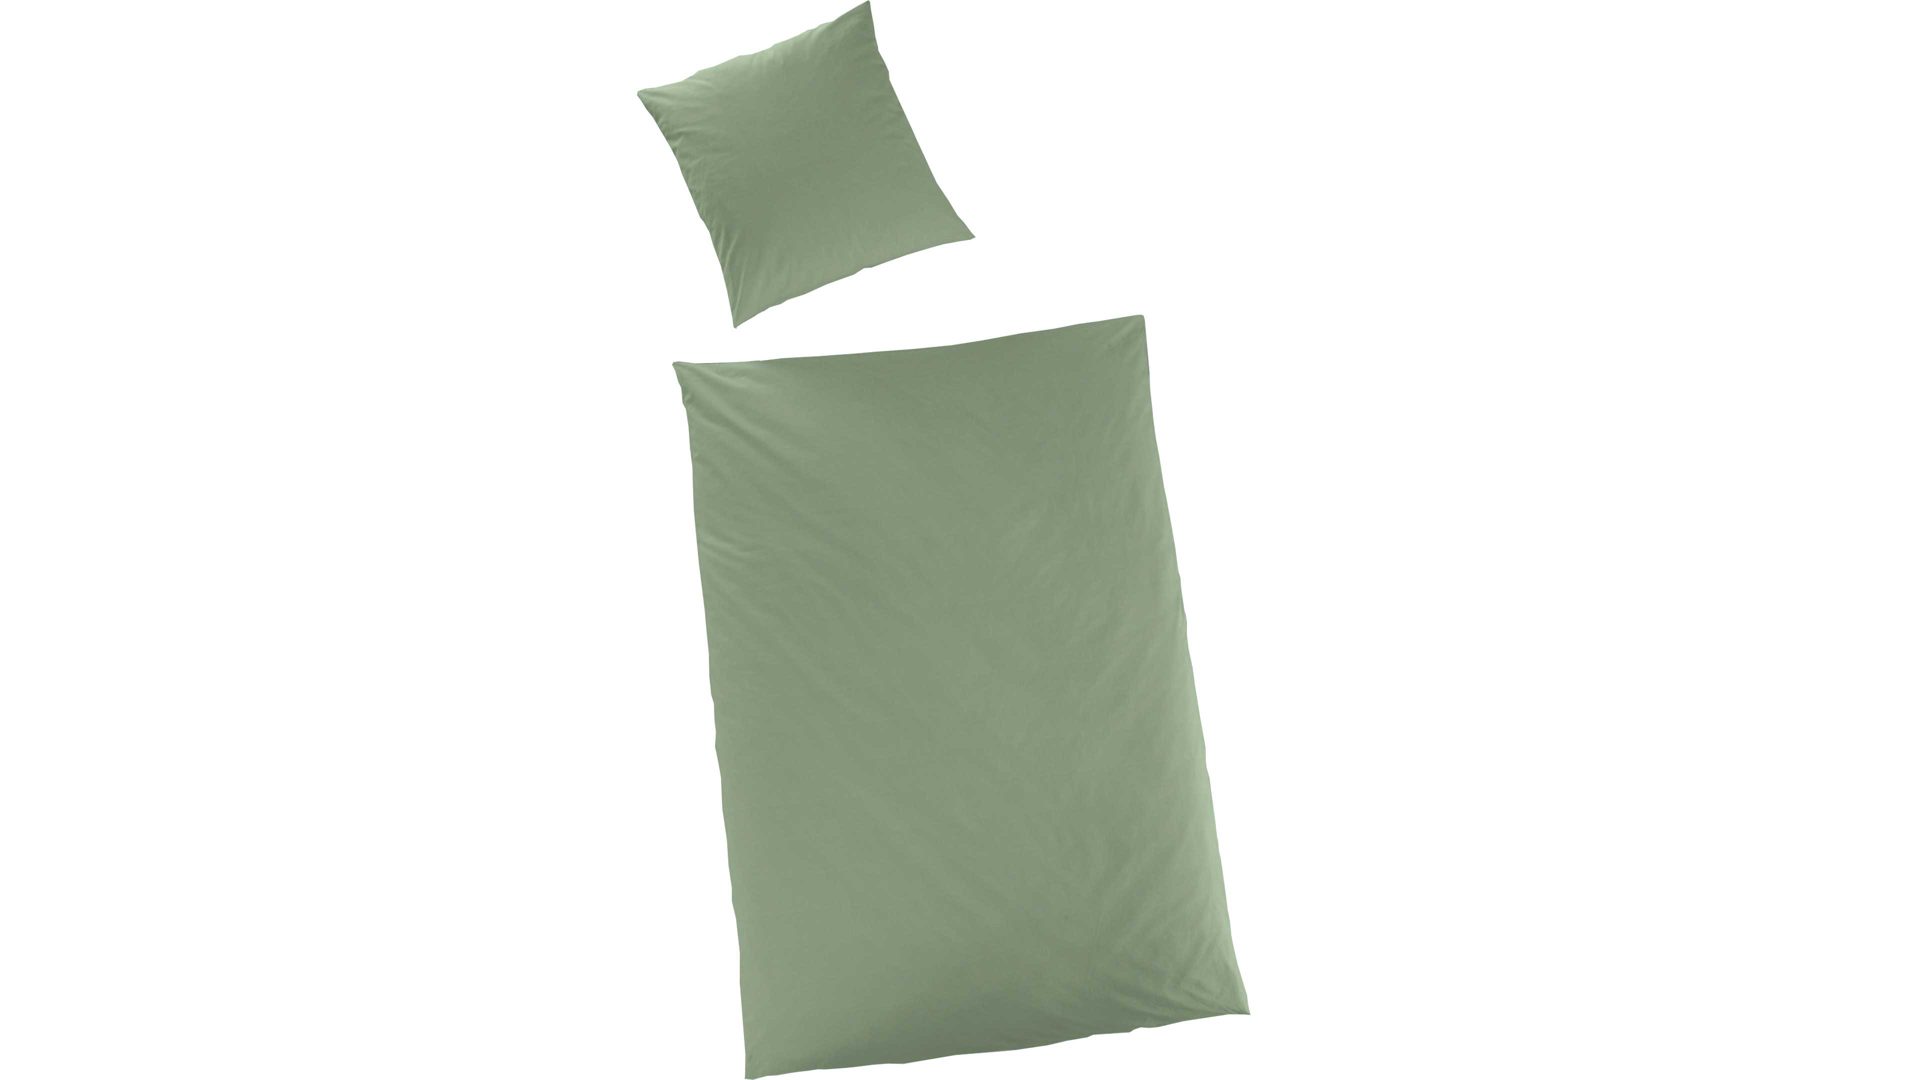 Bettwäsche-Set H.g. hahn haustextilien aus Stoff in Grün HAHN Luxus-Satin-Bettwäsche Sempre khakifarbener Baumwollsatin – zweiteilig, ca. 155 x 220 cm